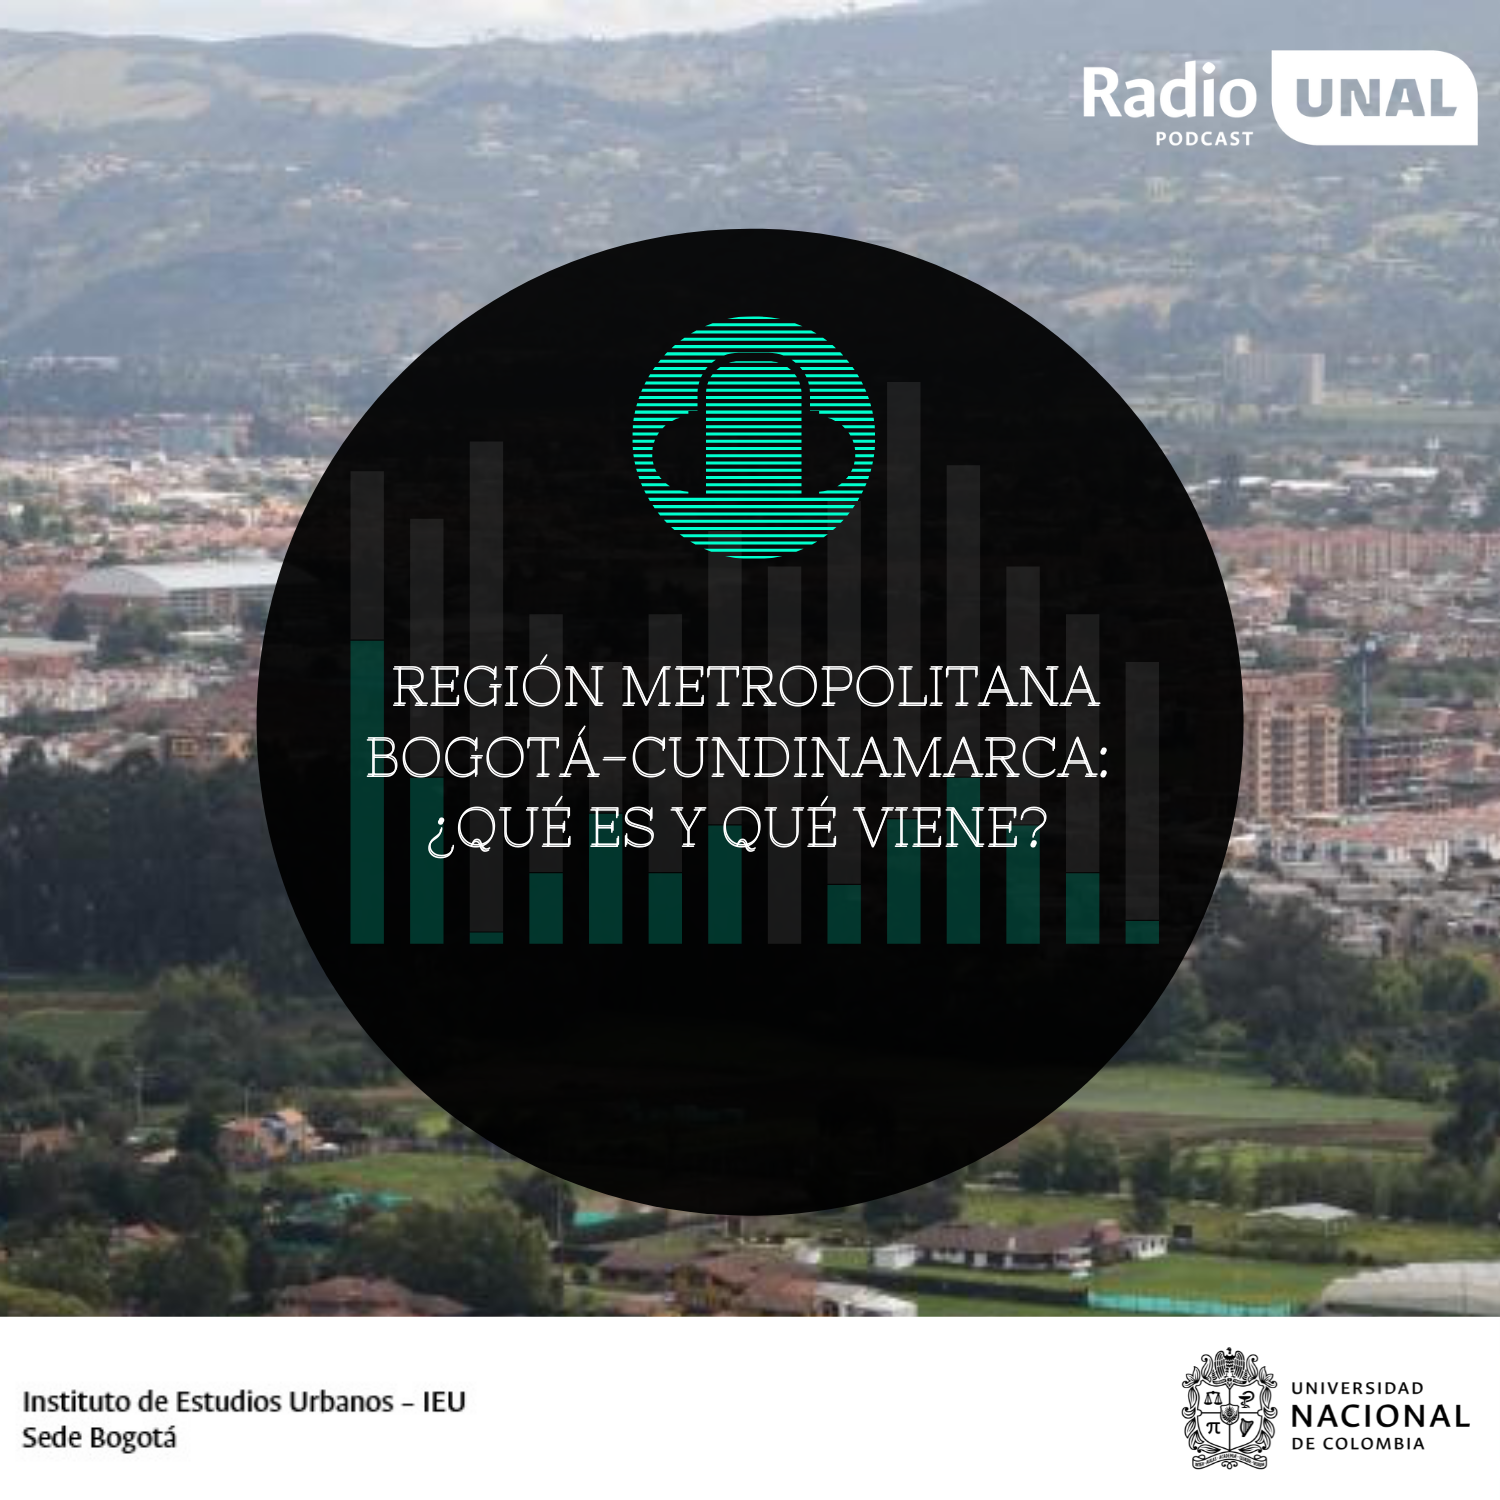 #PodcastRadioUNAL Región Metropolitana Bogotá-Cundinamarca: ¿qué es y qué viene?